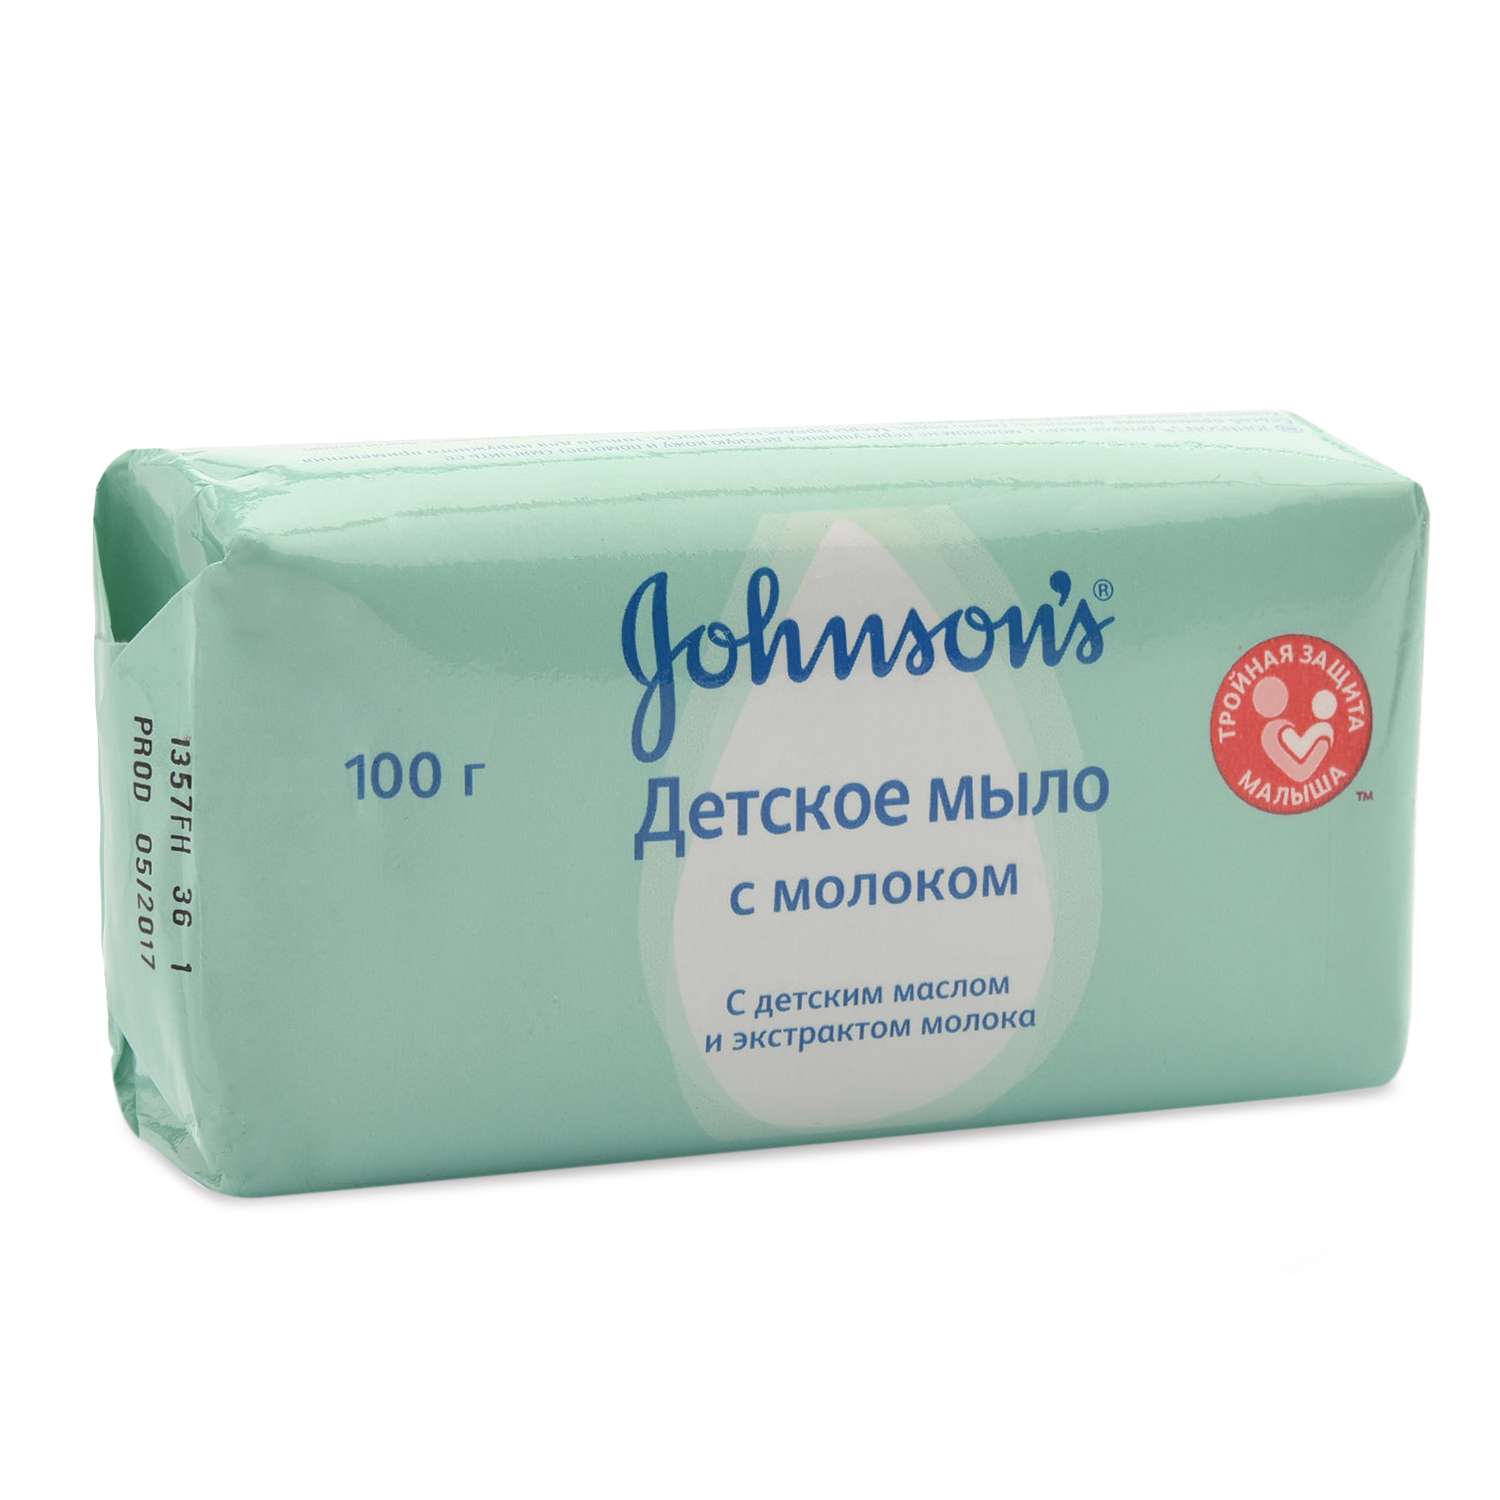 Мыло Johnson's с экстрактом натурального молочка 100г - фото 1